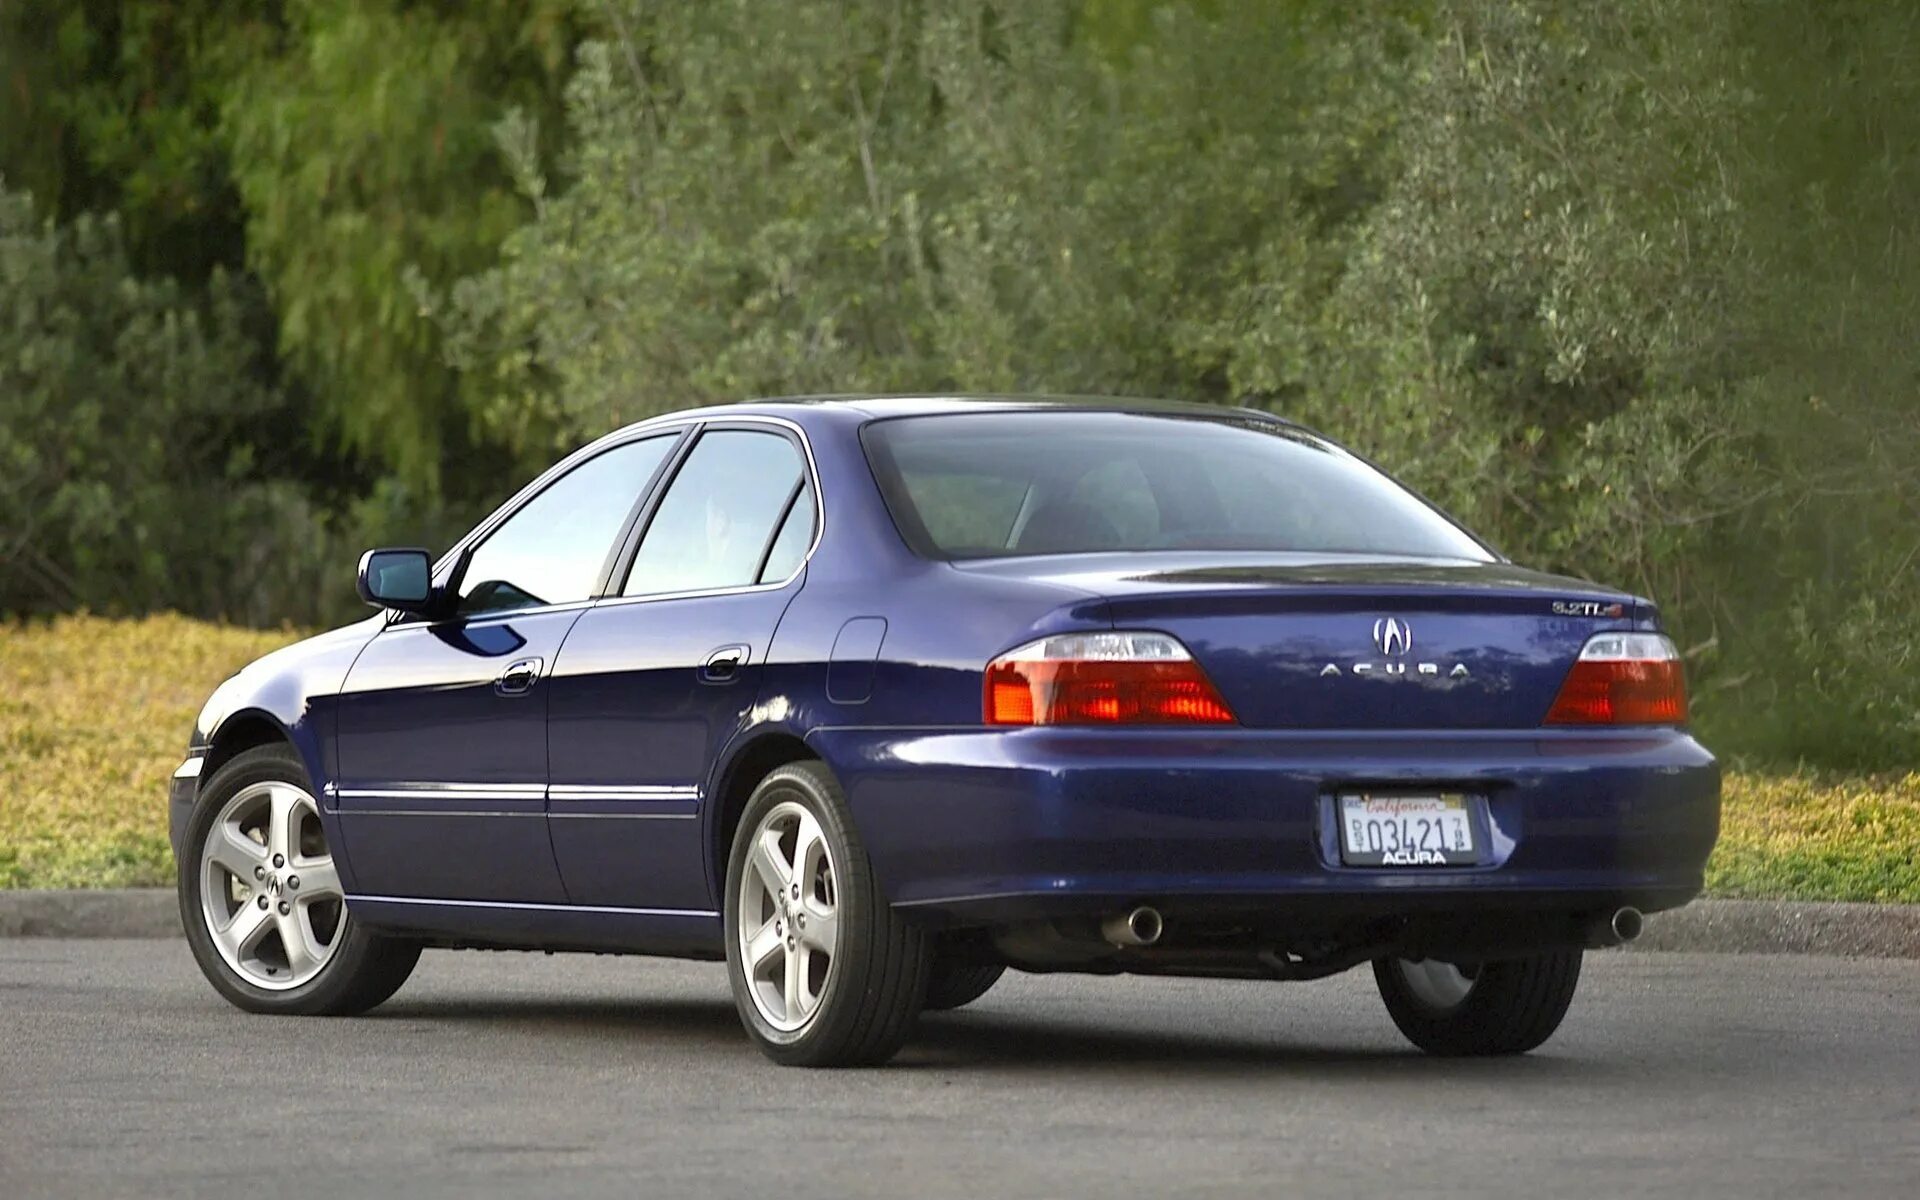 Tl фото. Acura 3.2 TL 1999. Акура ТЛ 2002. 2003 Acura 3.2 TL. Honda inspire 1999 3.2.